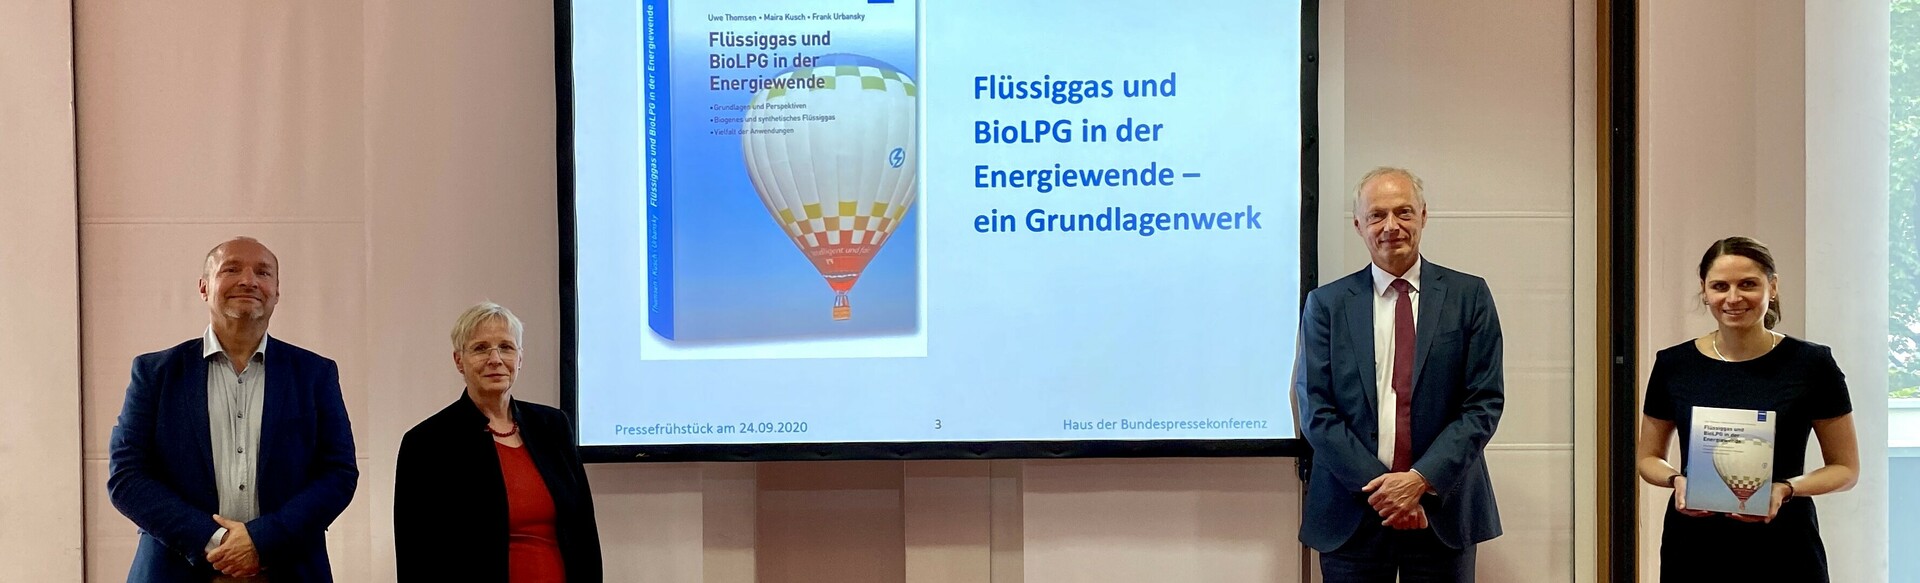 Vorstellung des Fachbuchs: Flüssiggas und BioLPG in der Energiewende.